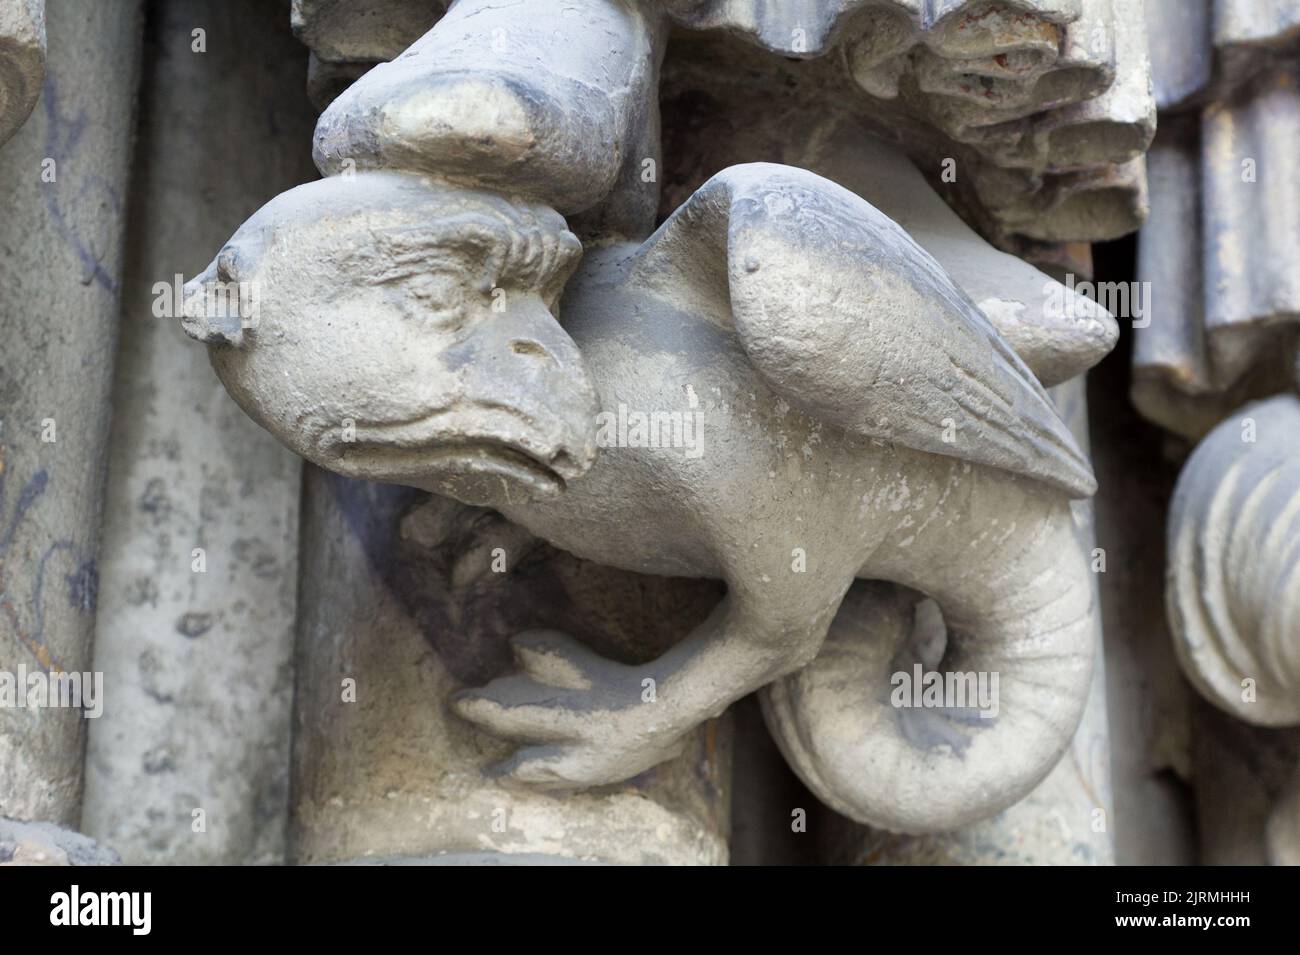 Basilisk - Porch of Saint-Germain l’Auxerrois, Place du Louvre, Paris Stock Photo